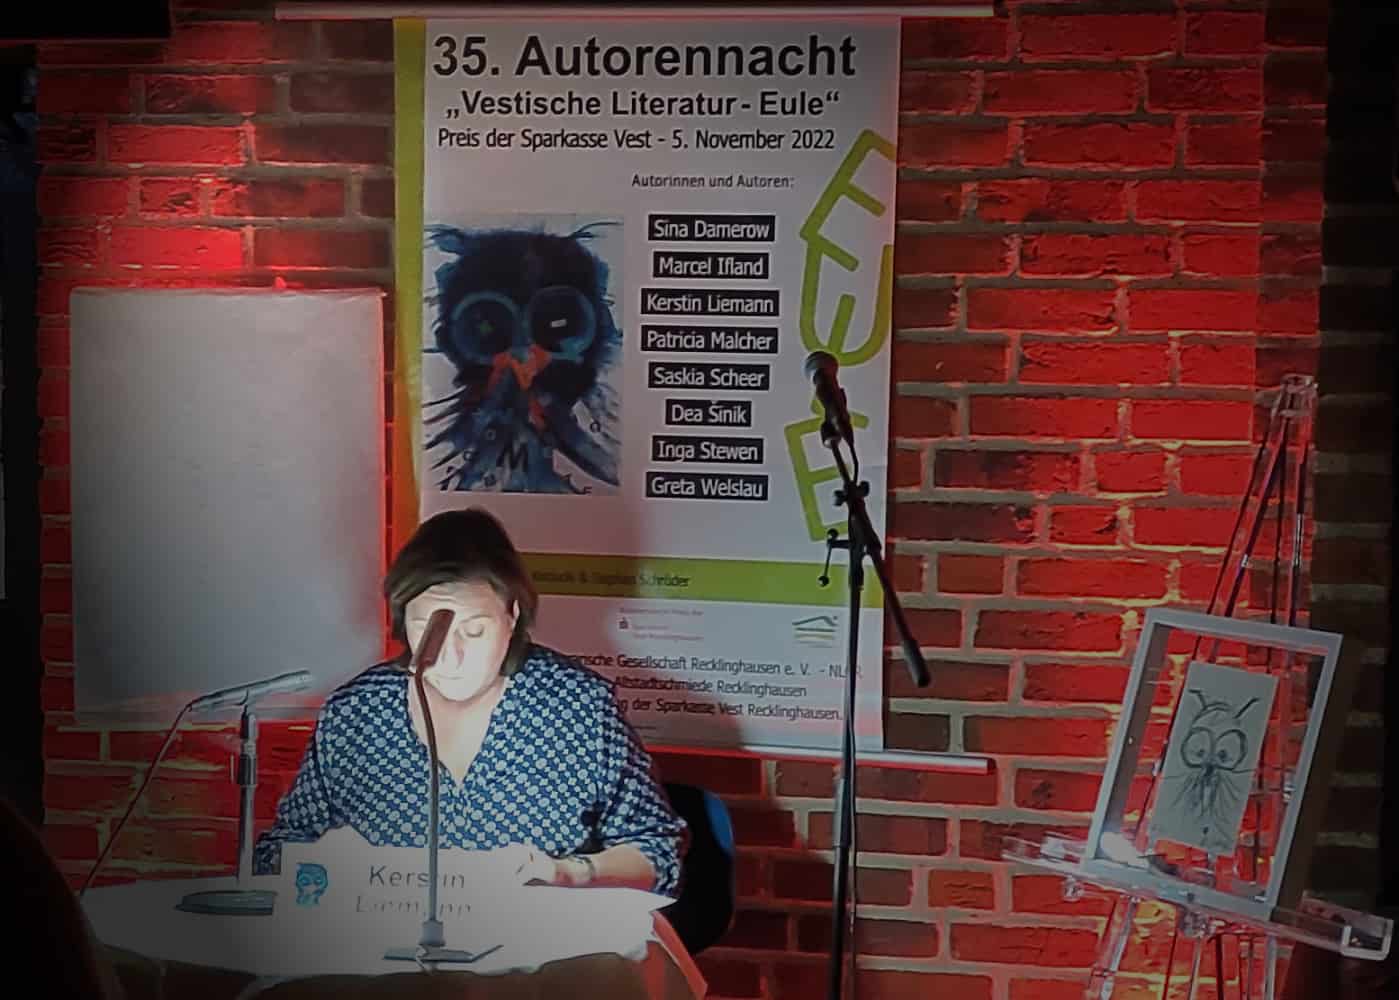 Kerstin Liemann - Autorennacht 2022 (C)